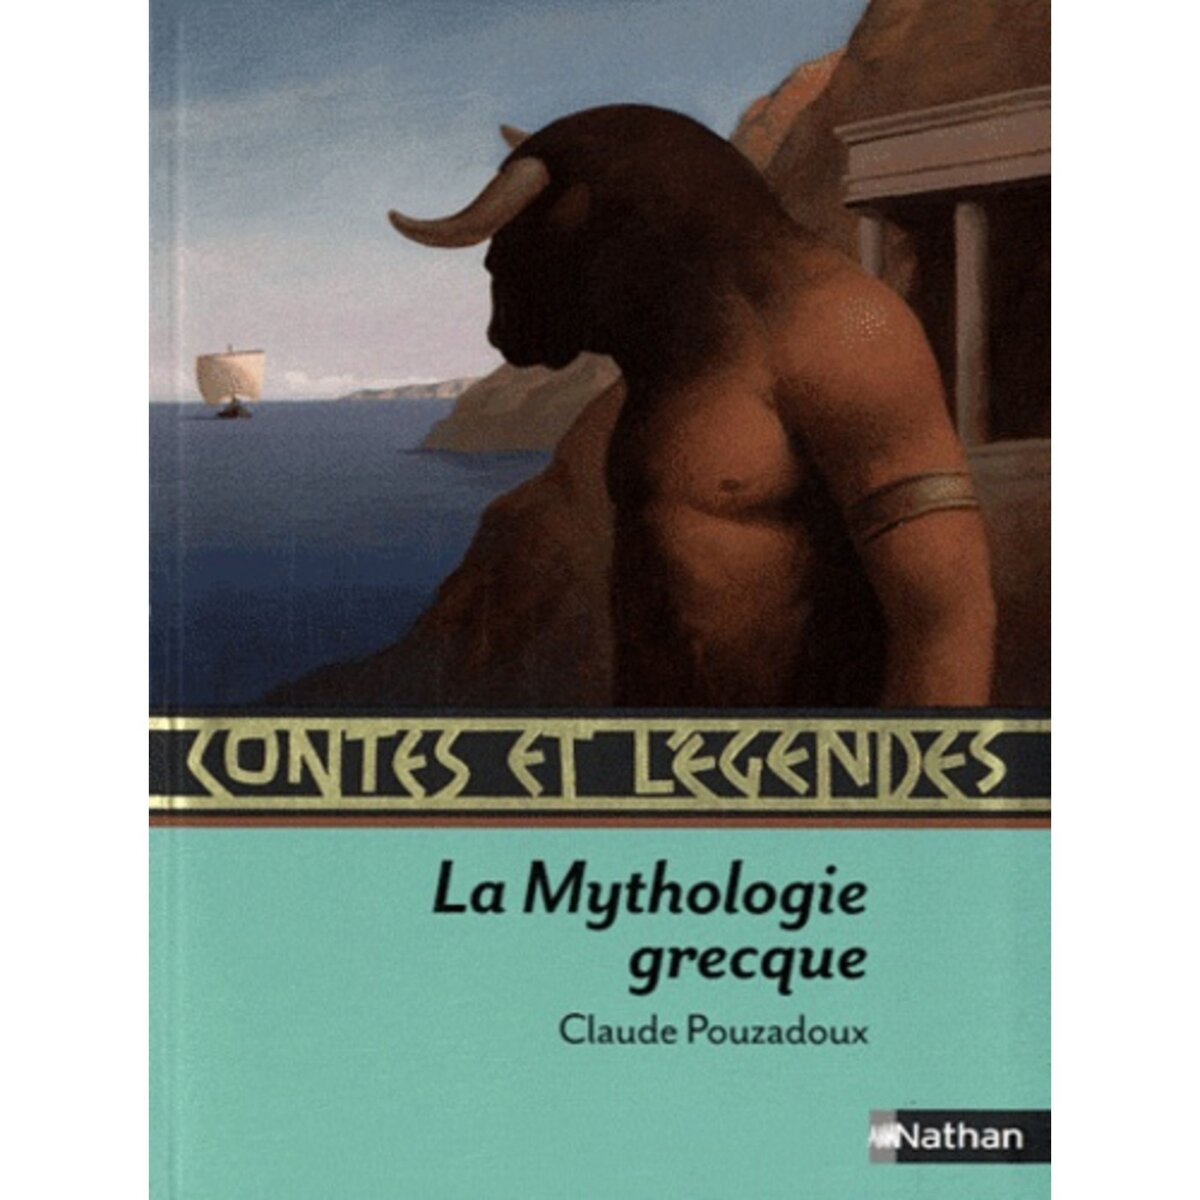  CONTES ET LEGENDES DE LA MYTHOLOGIE GRECQUE, Pouzadoux Claude